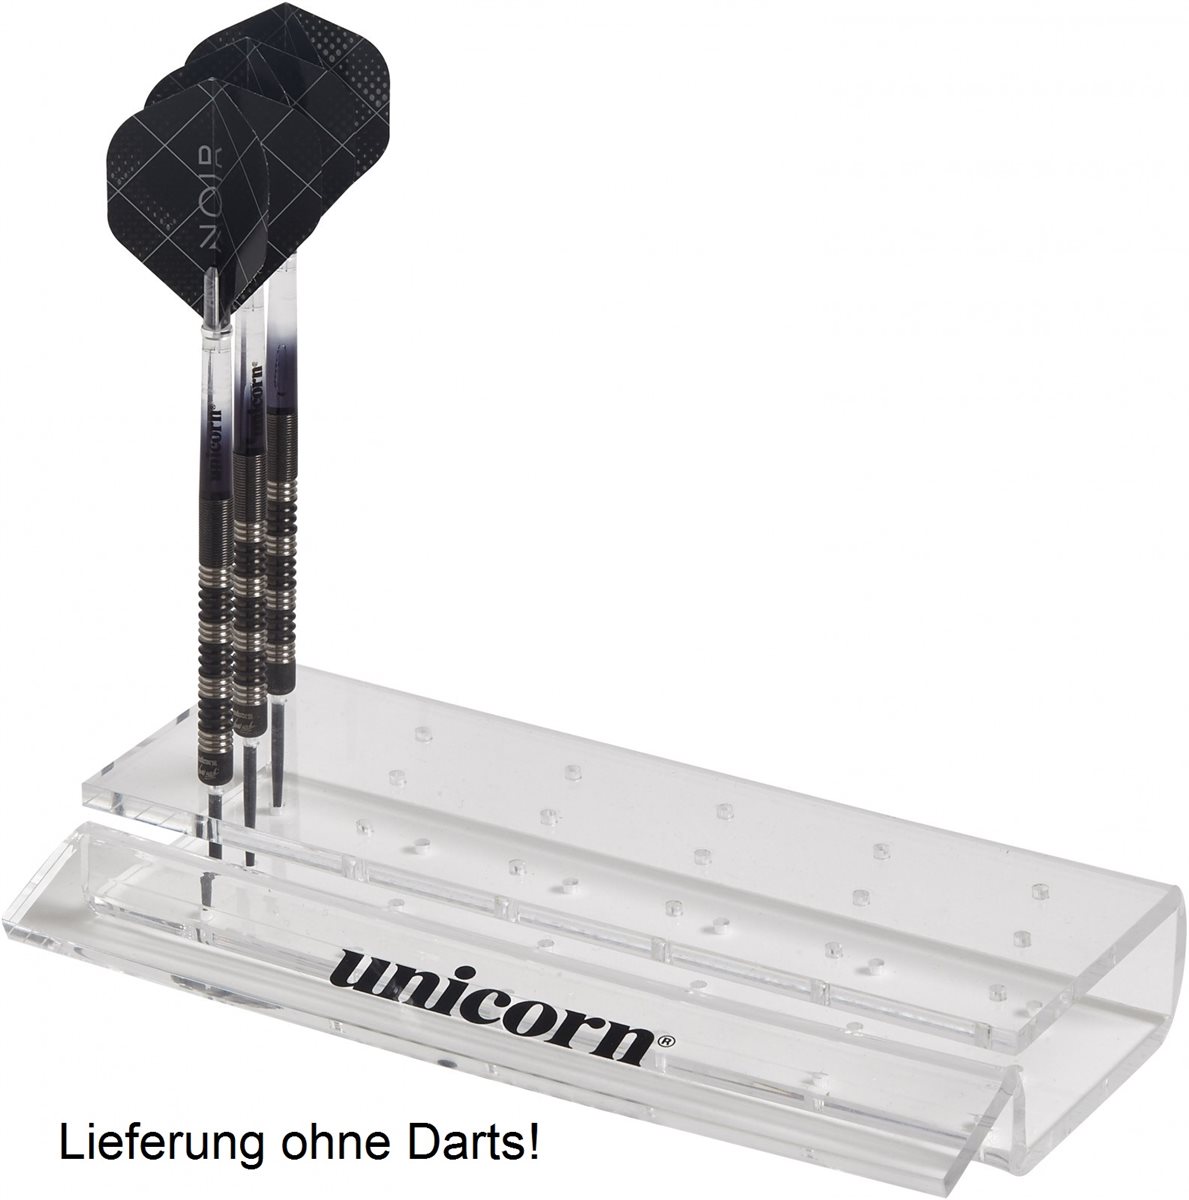 Unicorn Acryl Darts Ständer für bis zu 6 Set Darts Case